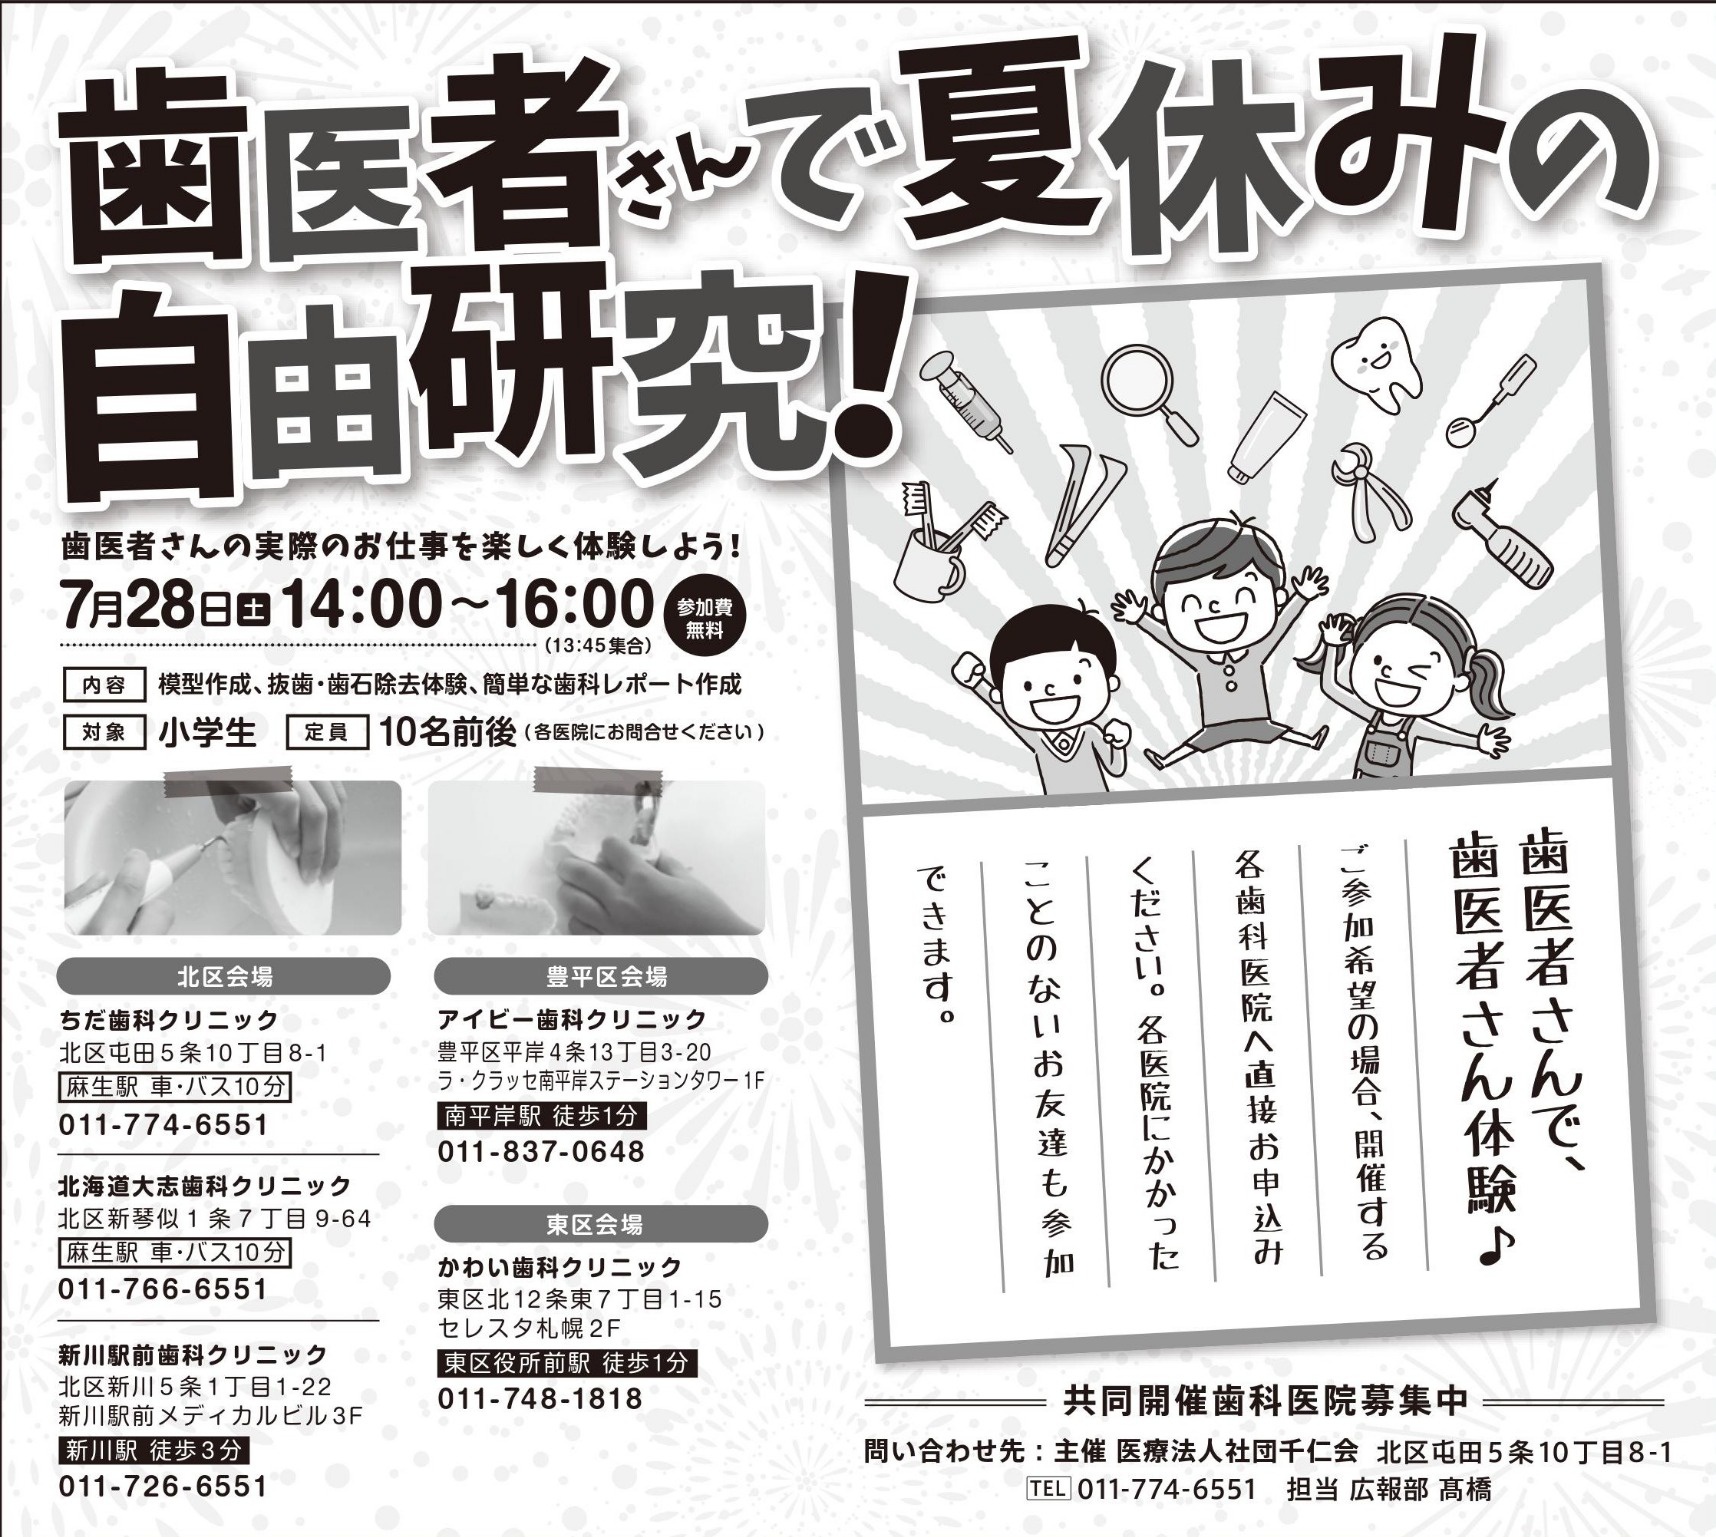 小学生対象 歯医者さんの職業体験 夏休み自由研究イベントを 札幌市内5つの歯科医院で開催いたします お知らせ ブログ 札幌 インプラントオフィス大通